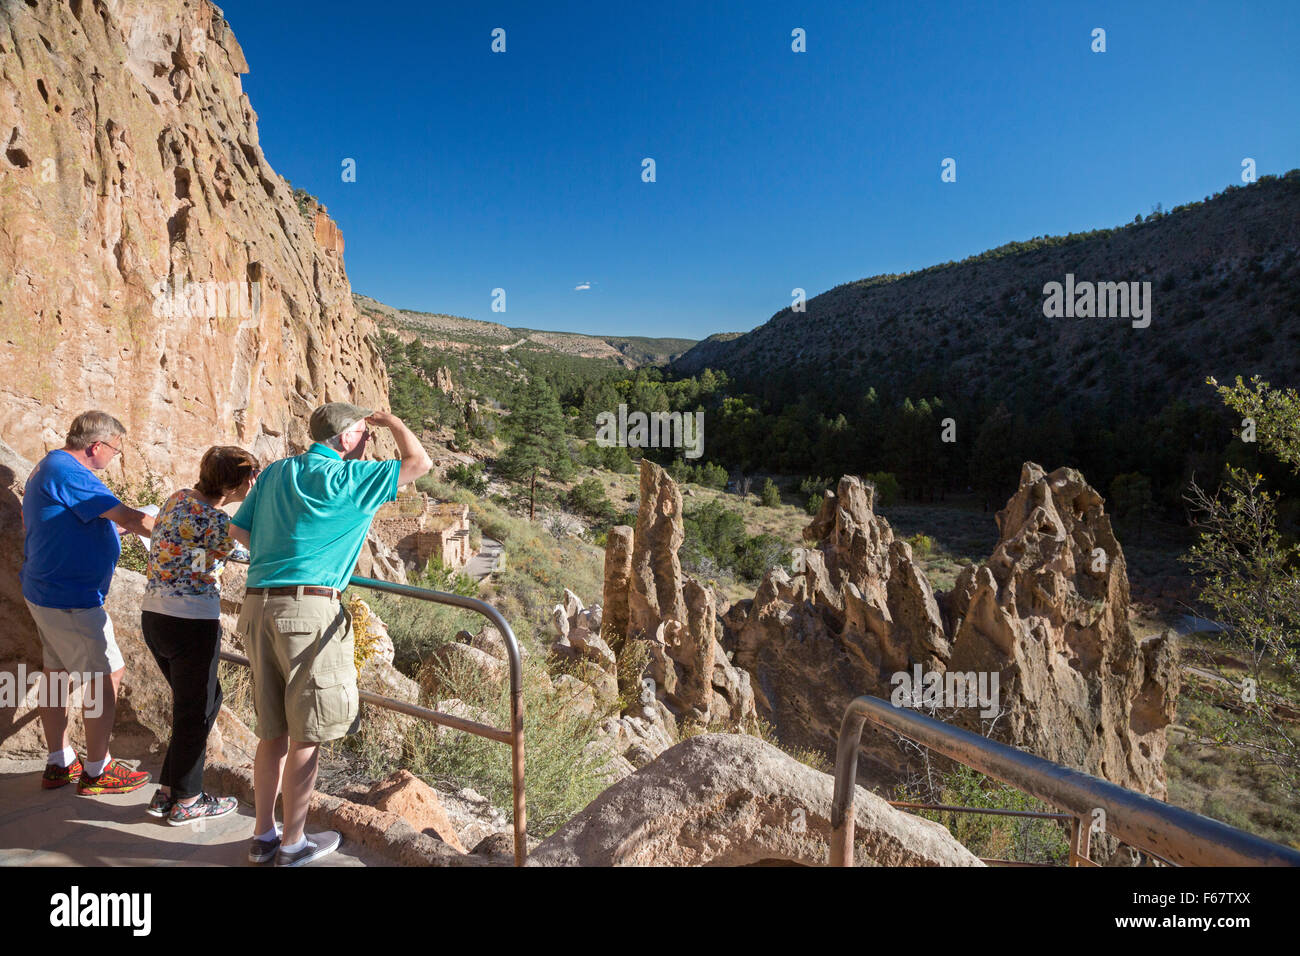 Los Alamos, New Mexico - Bandelier National Monument contiene le rovine di ancestrali Pueblo abitazioni. Foto Stock